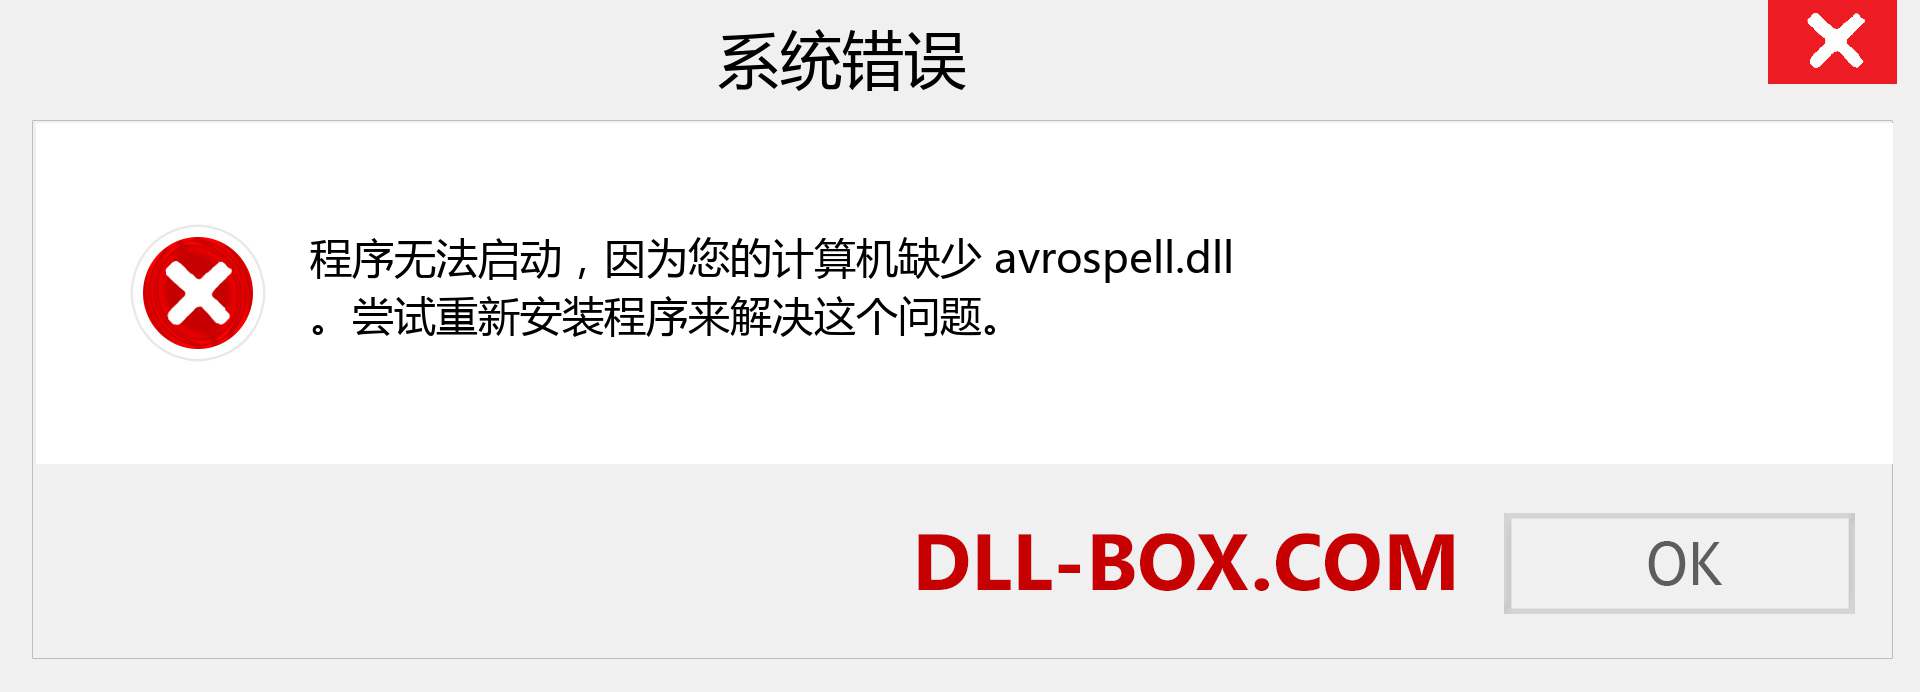 avrospell.dll 文件丢失？。 适用于 Windows 7、8、10 的下载 - 修复 Windows、照片、图像上的 avrospell dll 丢失错误